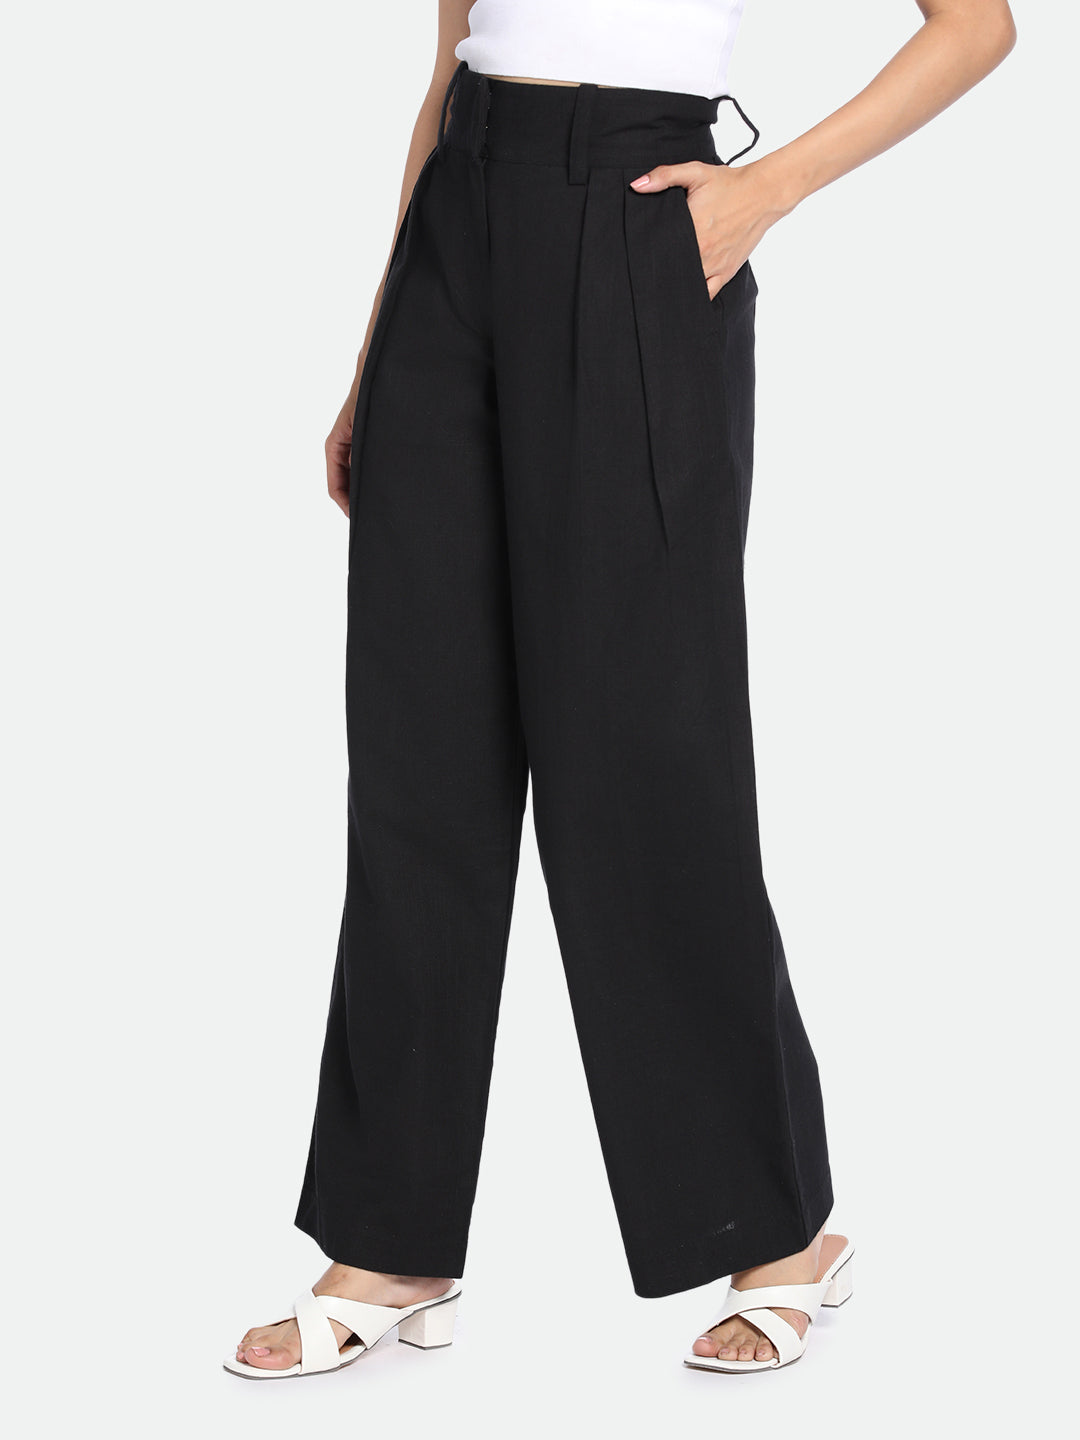 DL Woman Black Cotton Trousers